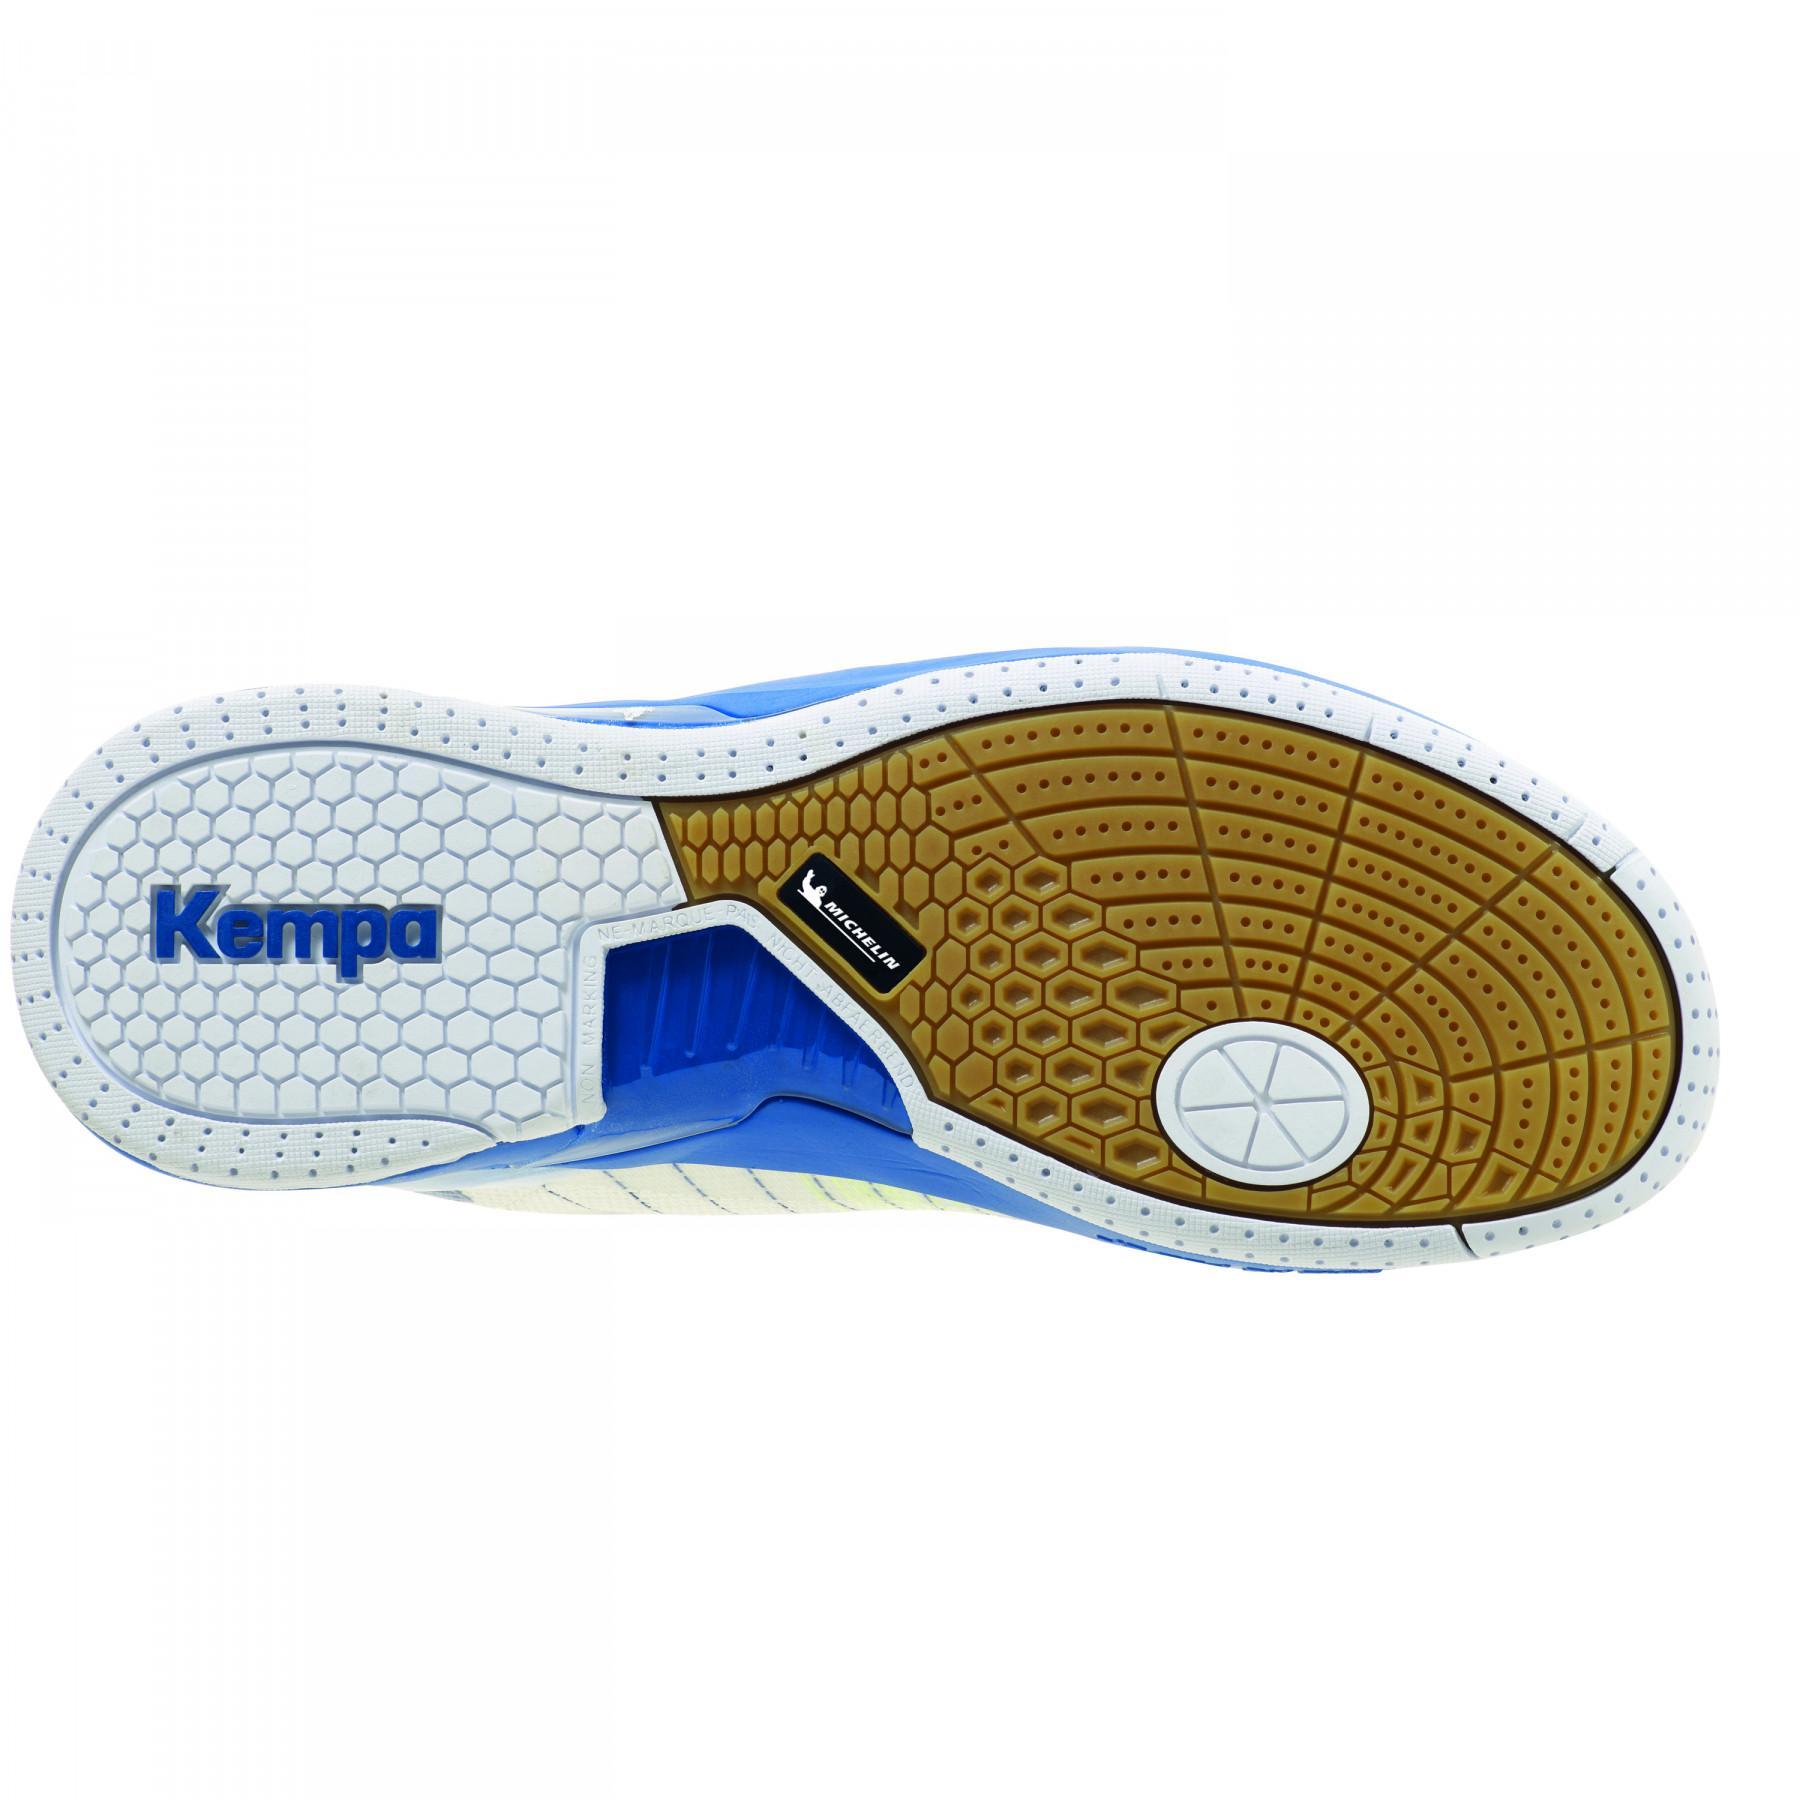 Ataque de sapatos dois competidores Kempa